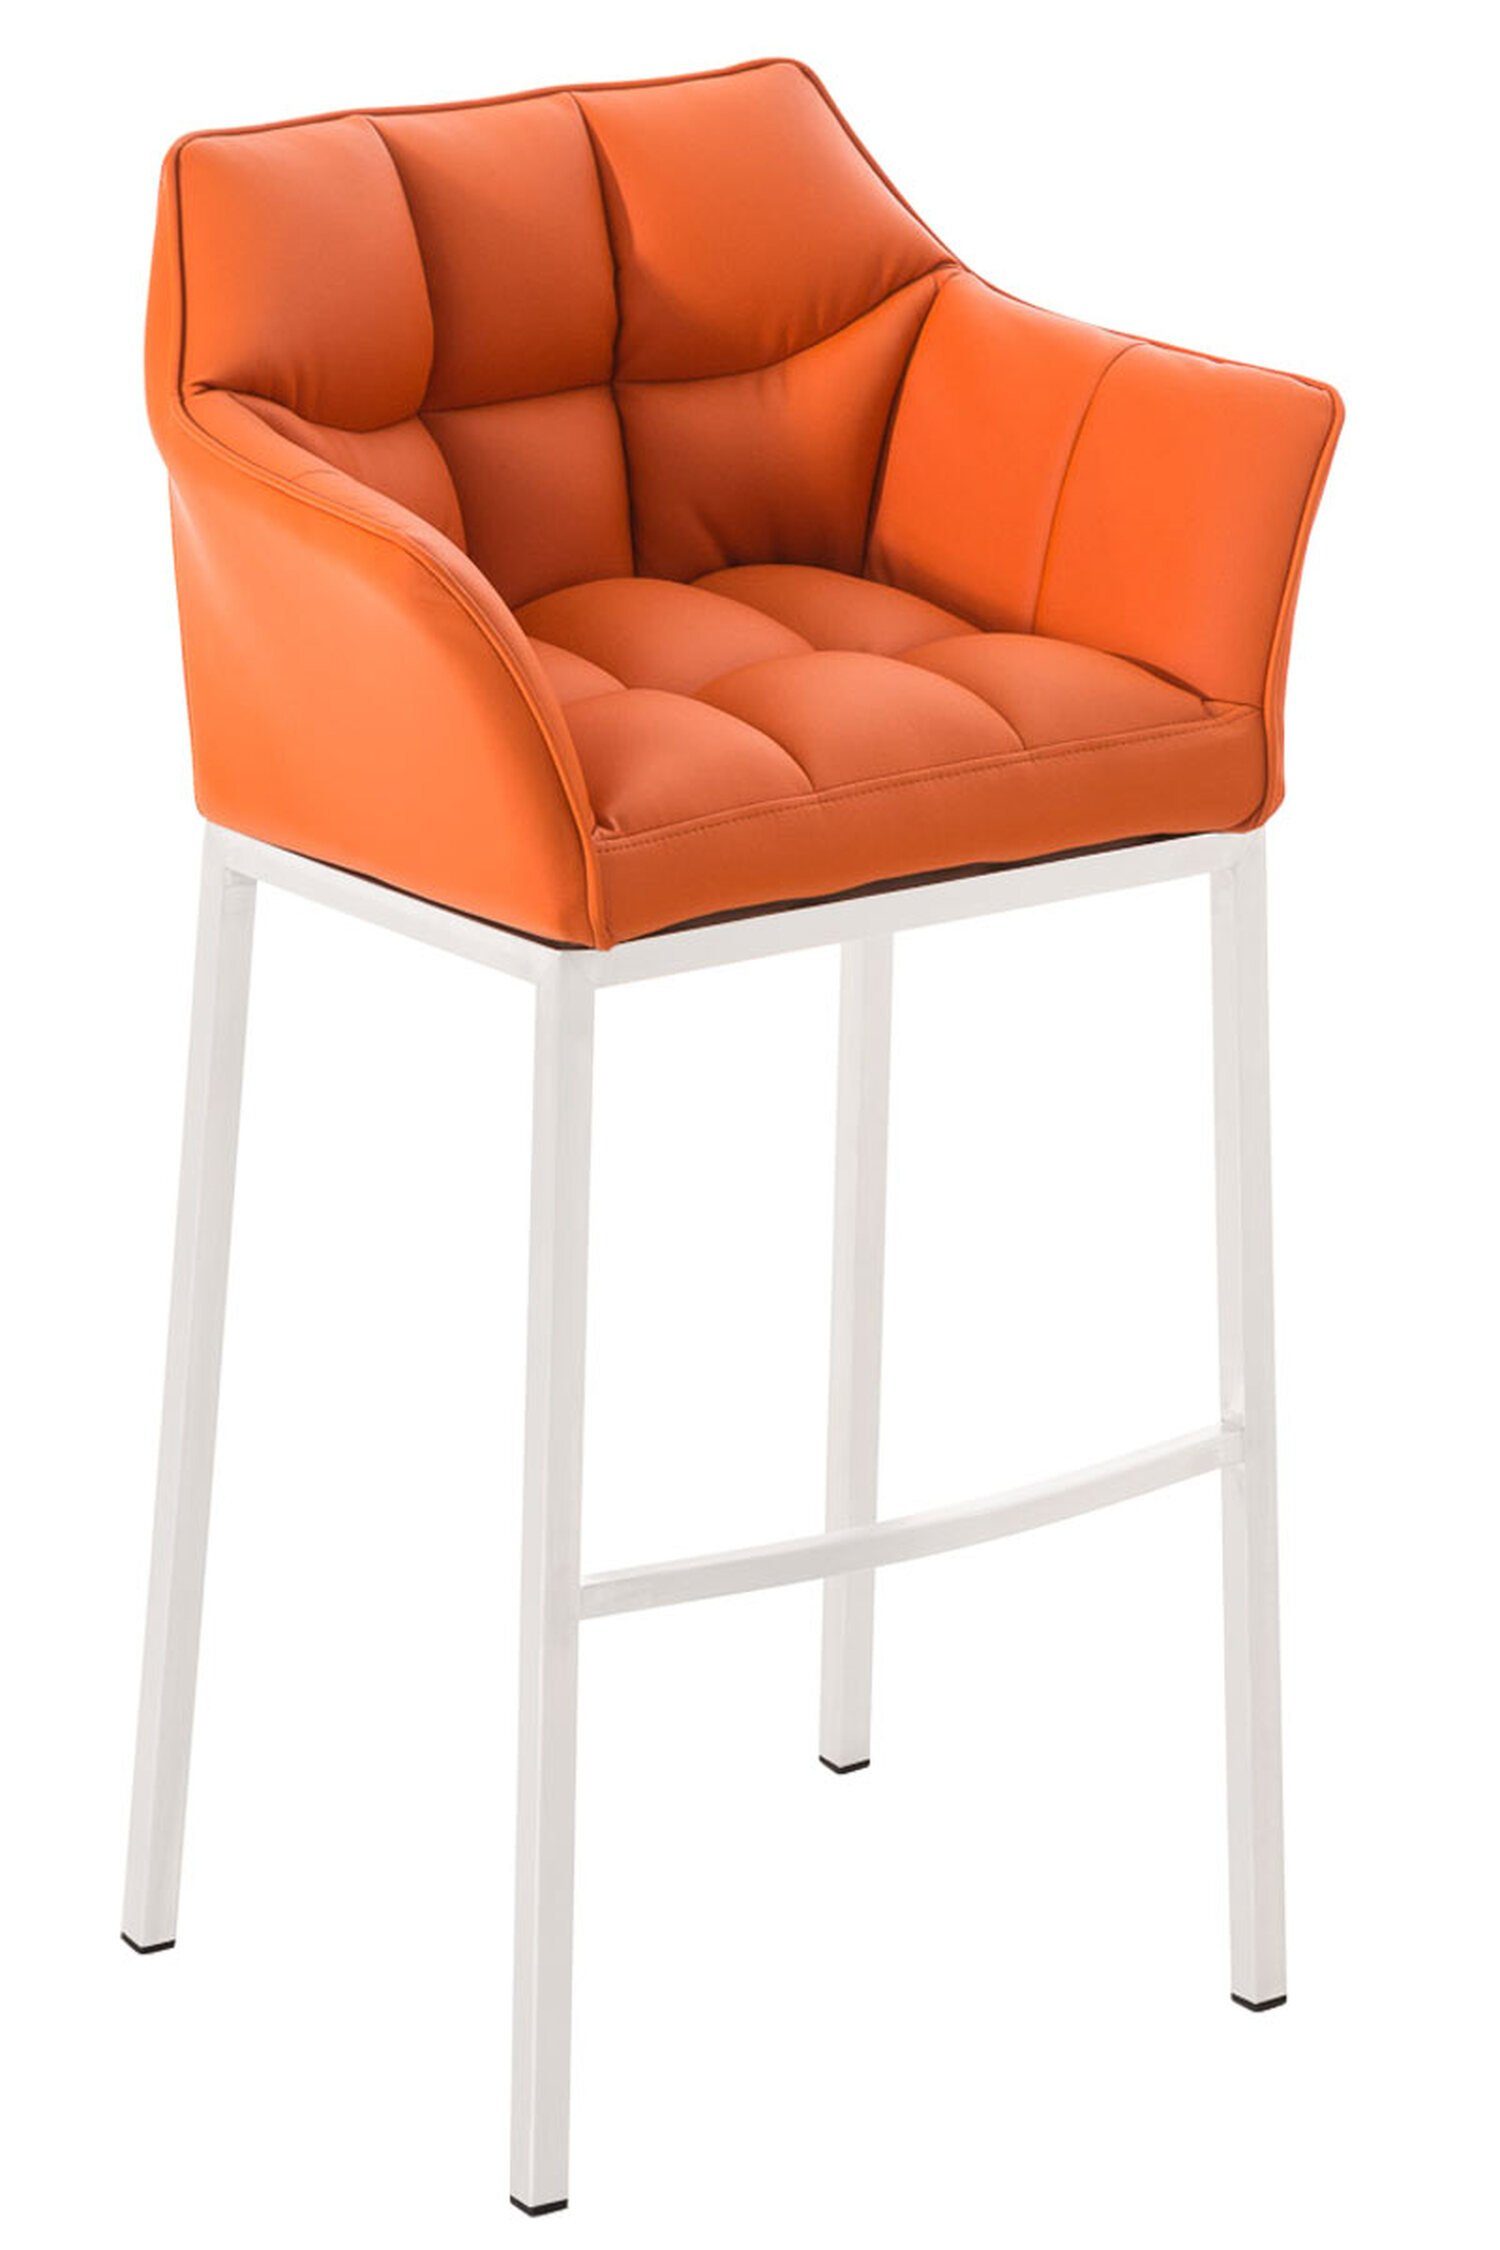 TPFLiving Barhocker Damaso (mit Rückenlehne und Fußstütze - Hocker für Theke & Küche), 4-Fuß Gestell weiß - Sitzfläche: Kunstleder Orange